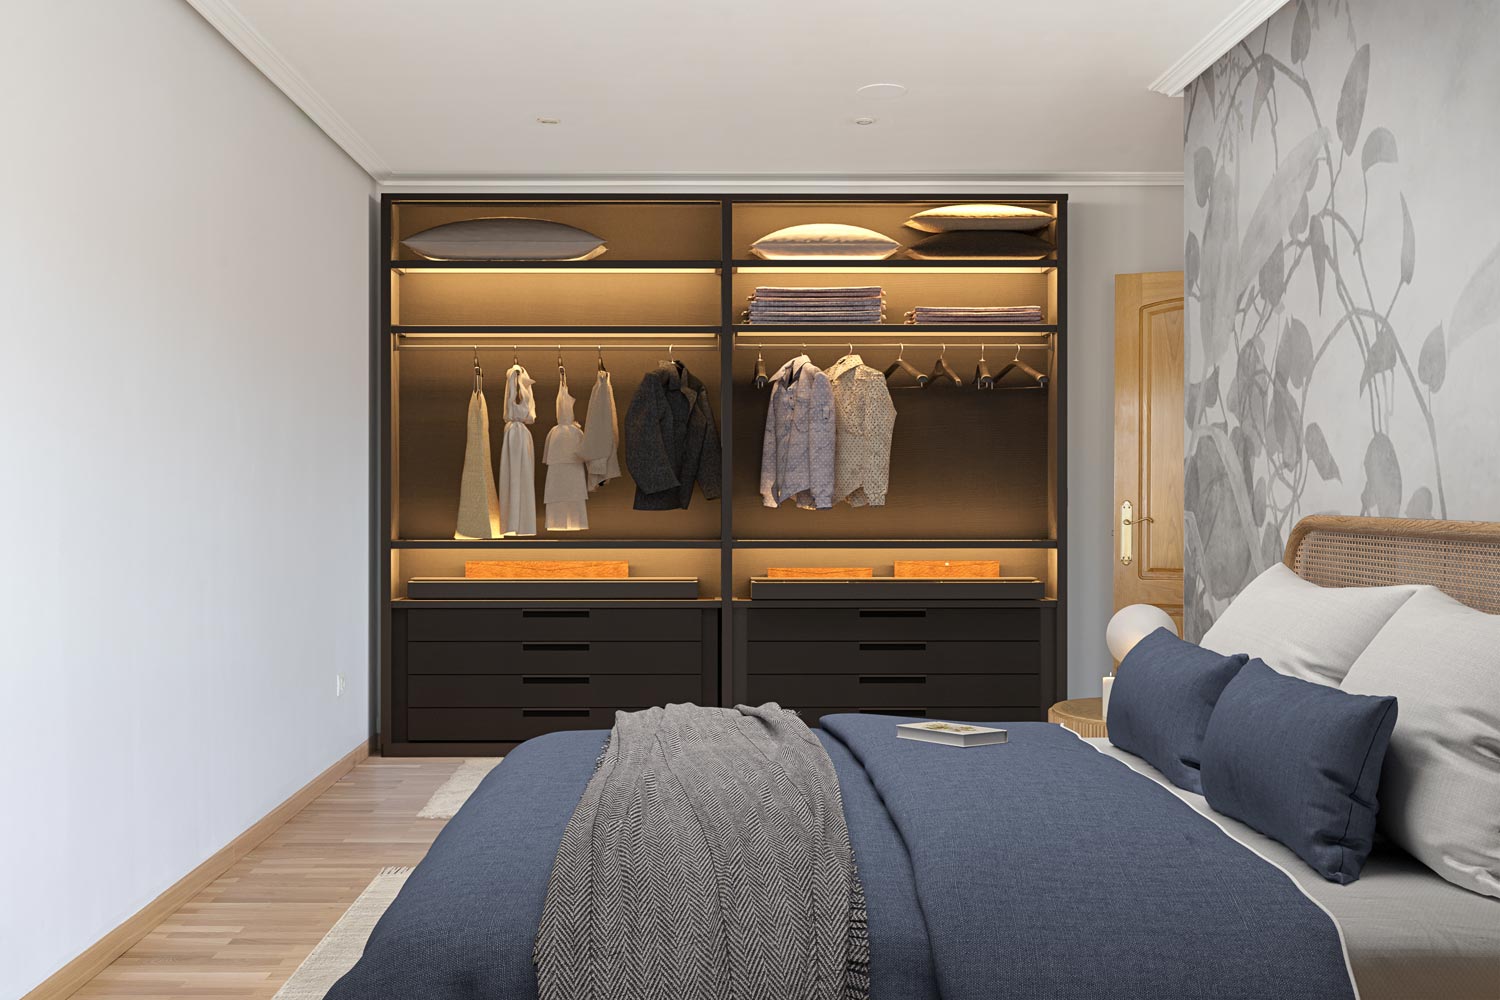 Dormitorio contemporáneo con armario iluminado y cama confortable, decorado con elegancia en piso de Sada, reflejo de tranquilidad y estilo